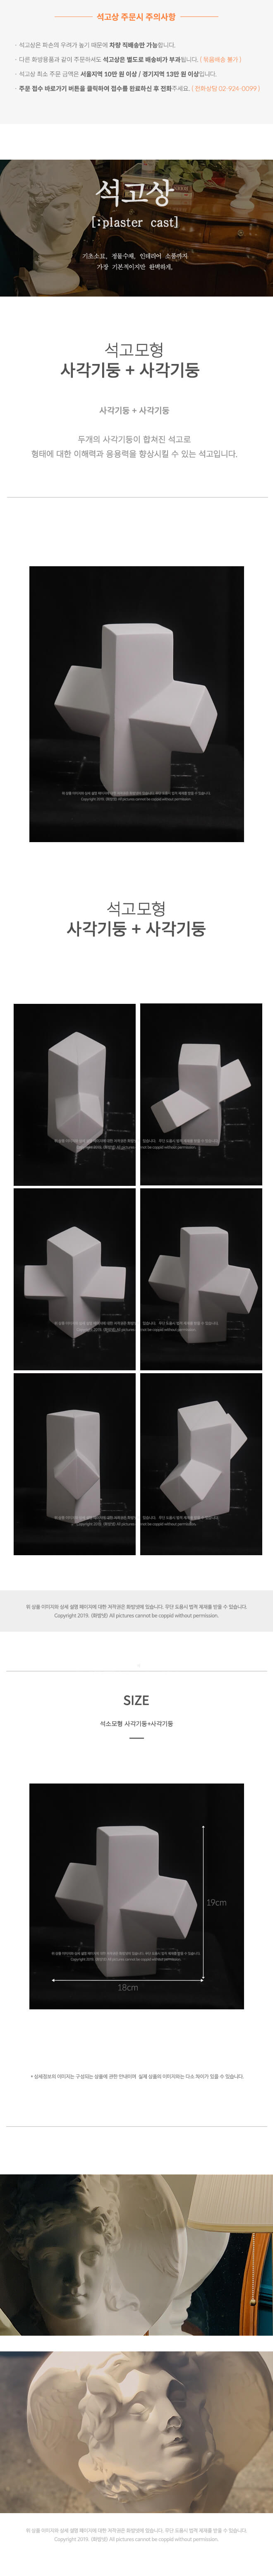 사각기둥 + 사각기둥 18 x 19 cm 석고모형 , 석고상, 조각상, 인테리어 소품